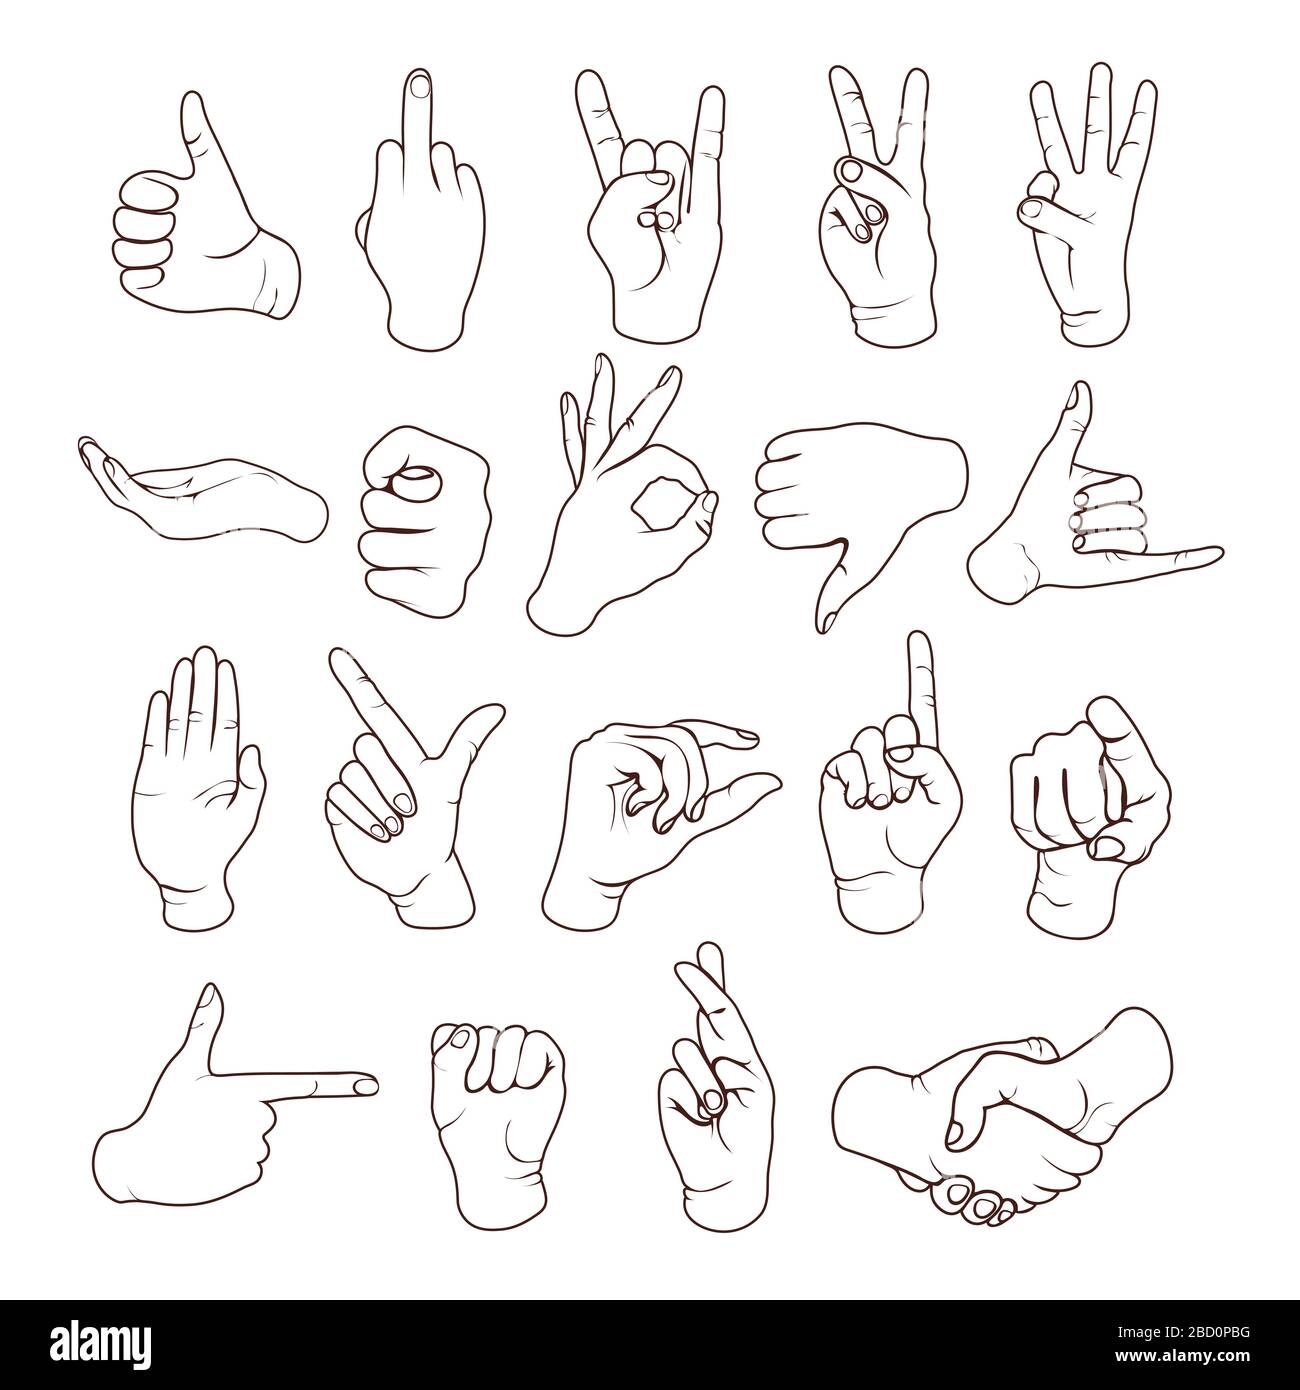 Contorni dei gesti delle mani, segni delle dita, set di icone del linguaggio dei segni, stencil, logo, silhouette. Disegno di linea del polso, le mani che mostrano vari simboli classici è Illustrazione Vettoriale